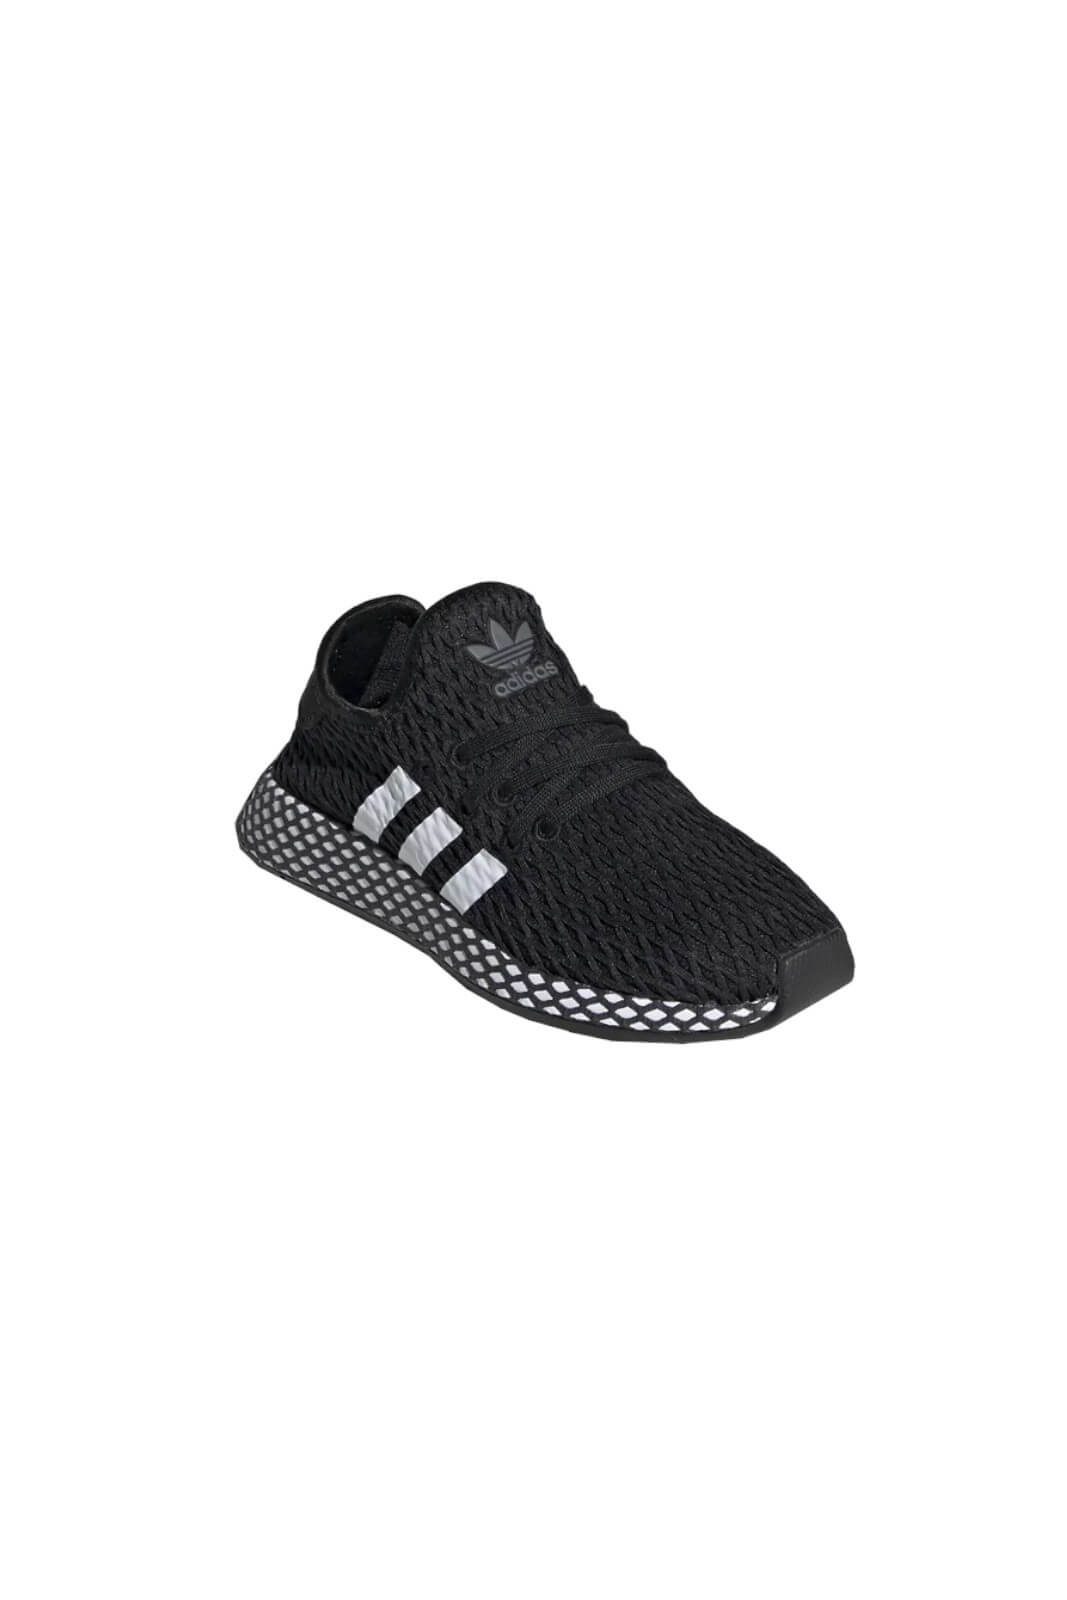 Adidas Sneakers Child Unisex DEERUPT RUNNER C